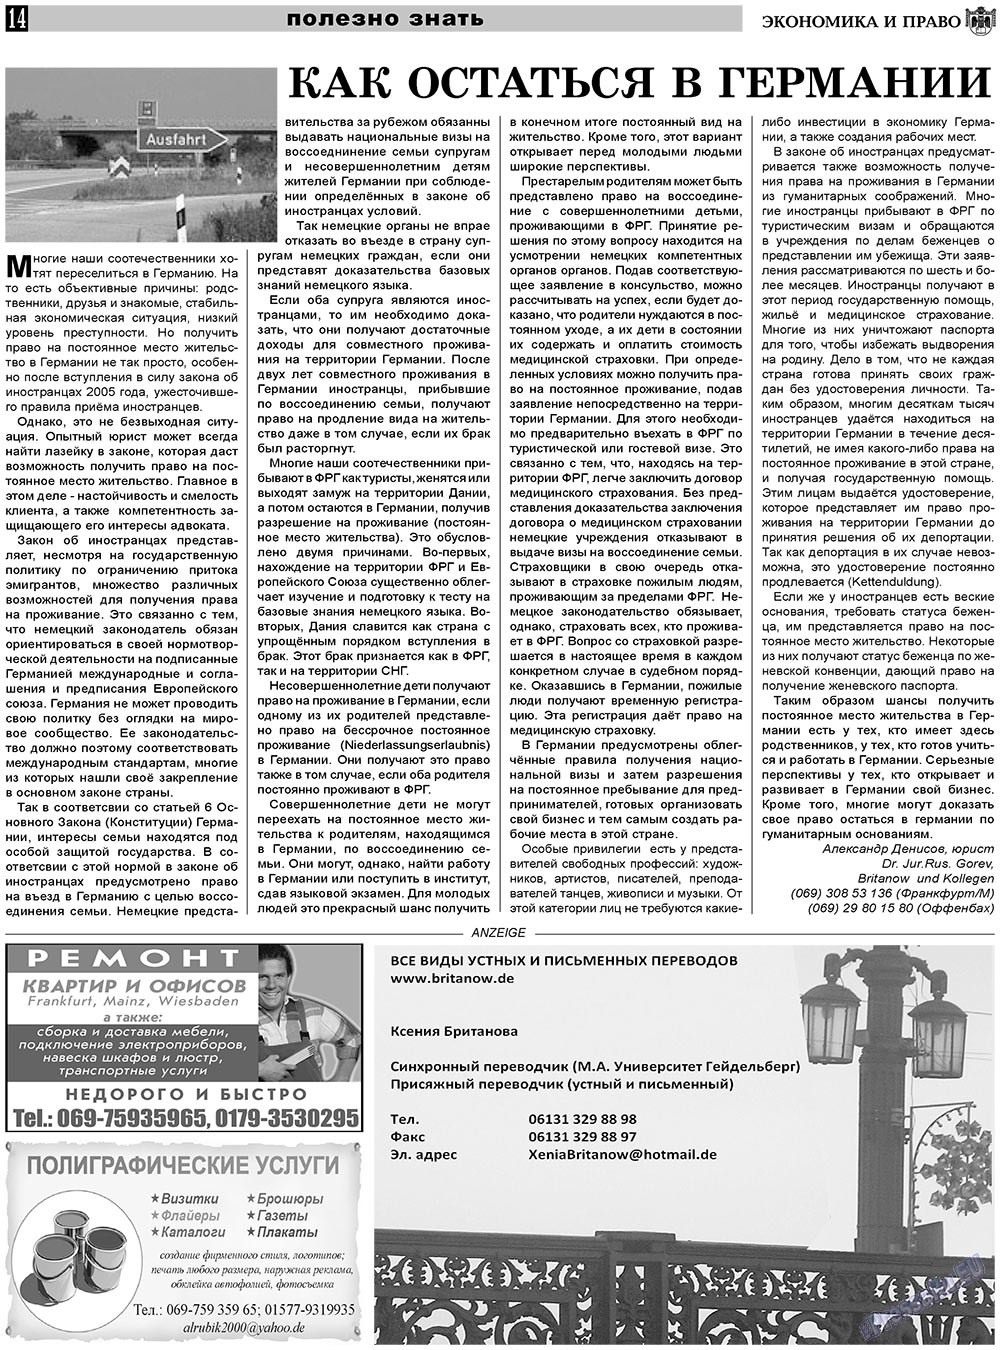 Экономика и право, газета. 2011 №2 стр.14